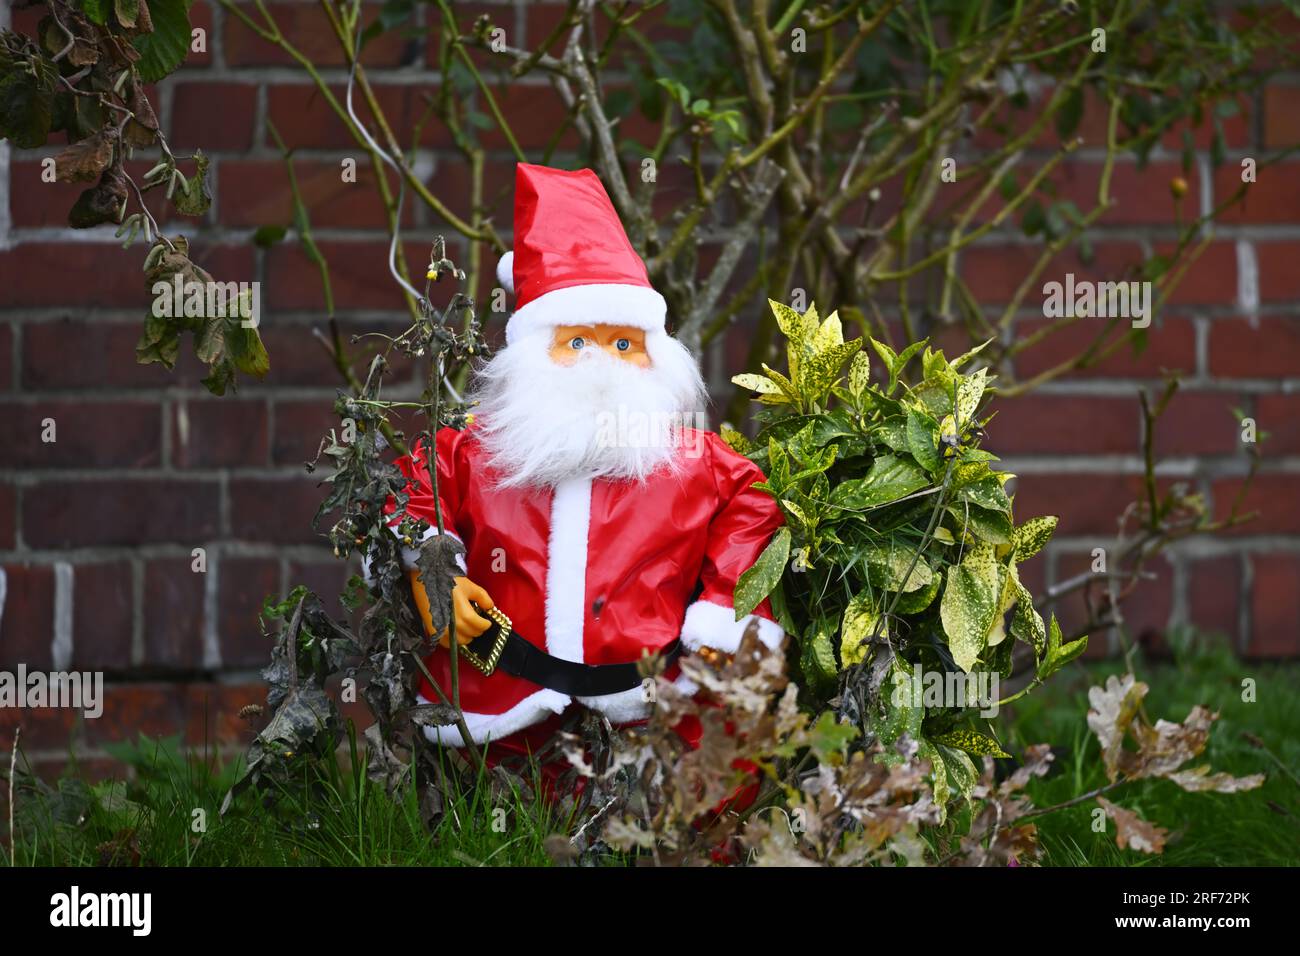 Weihnachtsmann-Deko in einem Vorgarten ad Amburgo, Deutschland Foto Stock